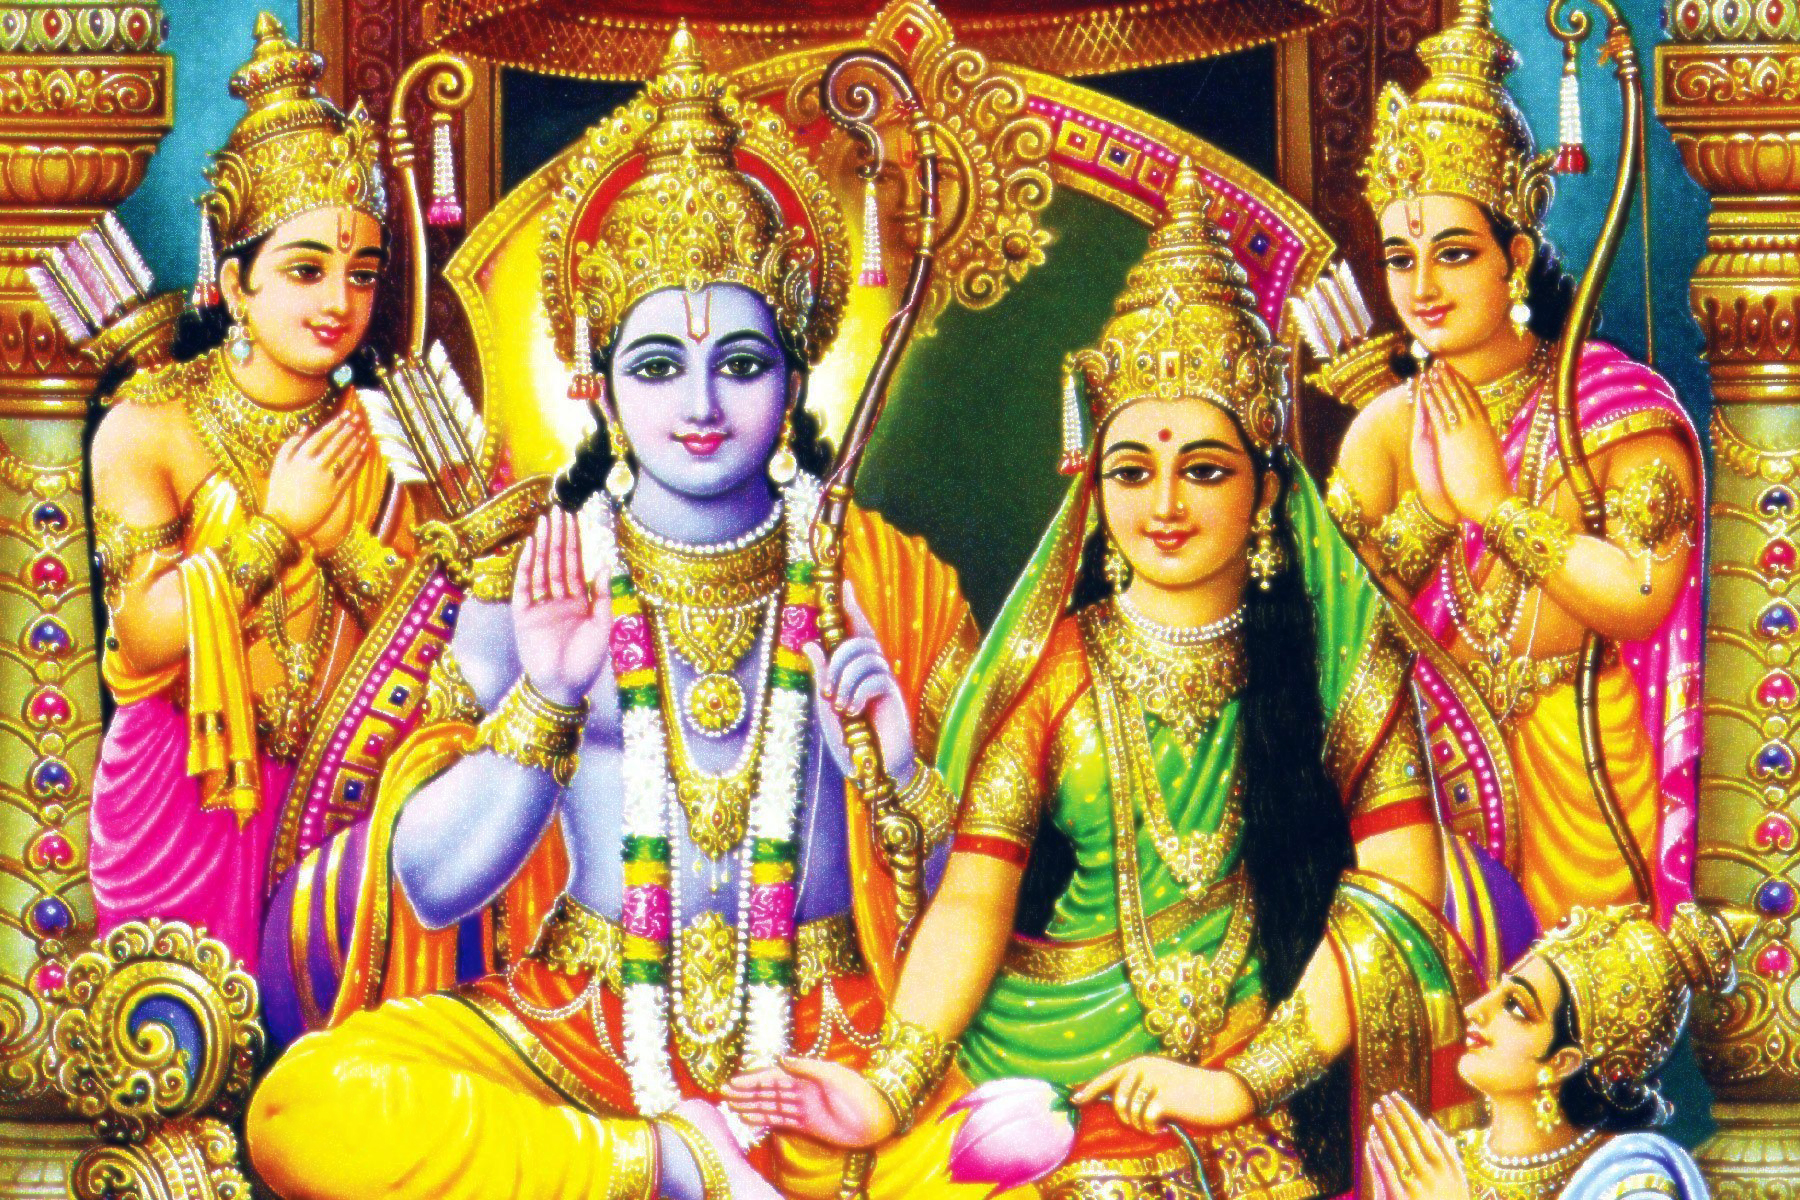 Ramayan Katha, Ramayan, Ram Charitra, SitaRam, Sita Ram, Shree Hari, Narayan